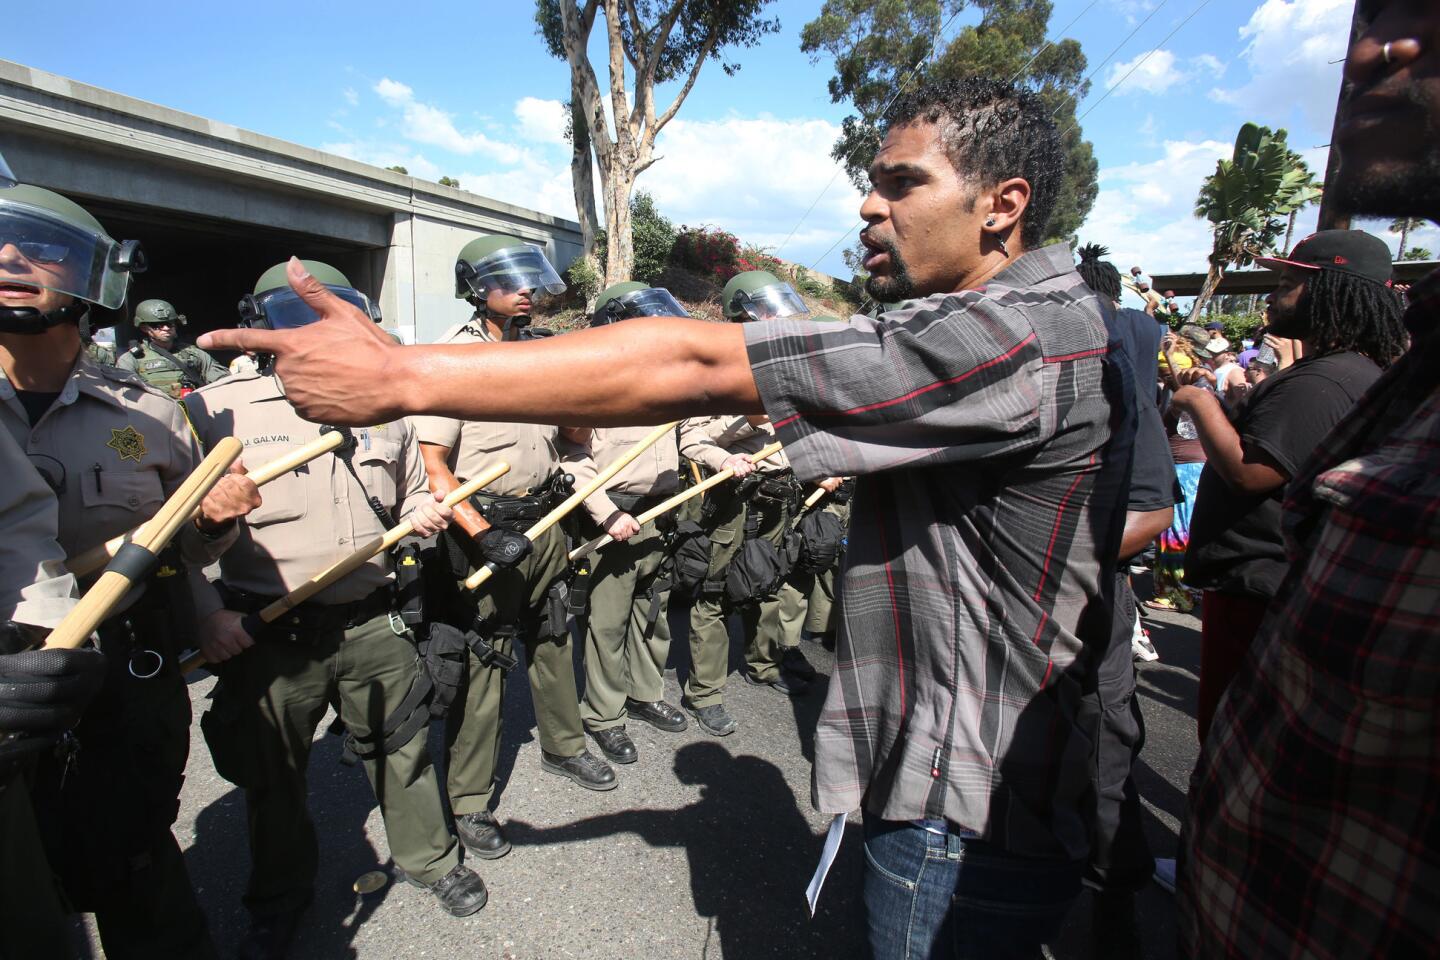 Protestors confront the police